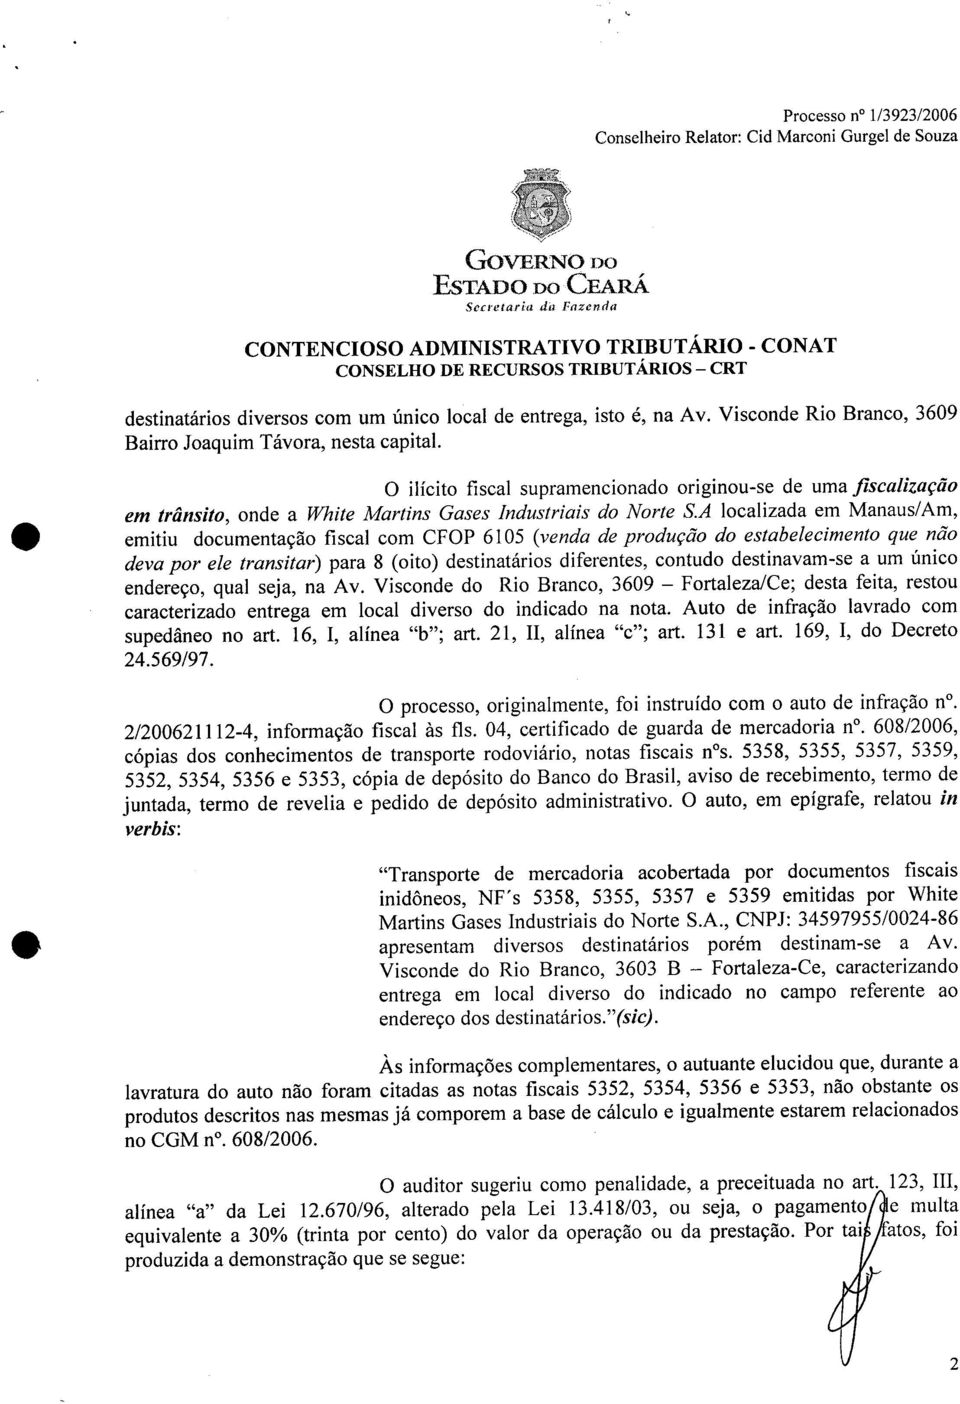 A localizada em Manaus/ Am, emitiu documentação fiscal com CFOP 6105 (venda de produção do estabelecimento que não deva por ele transitar) para 8 (oito) destinatários diferentes, contudo